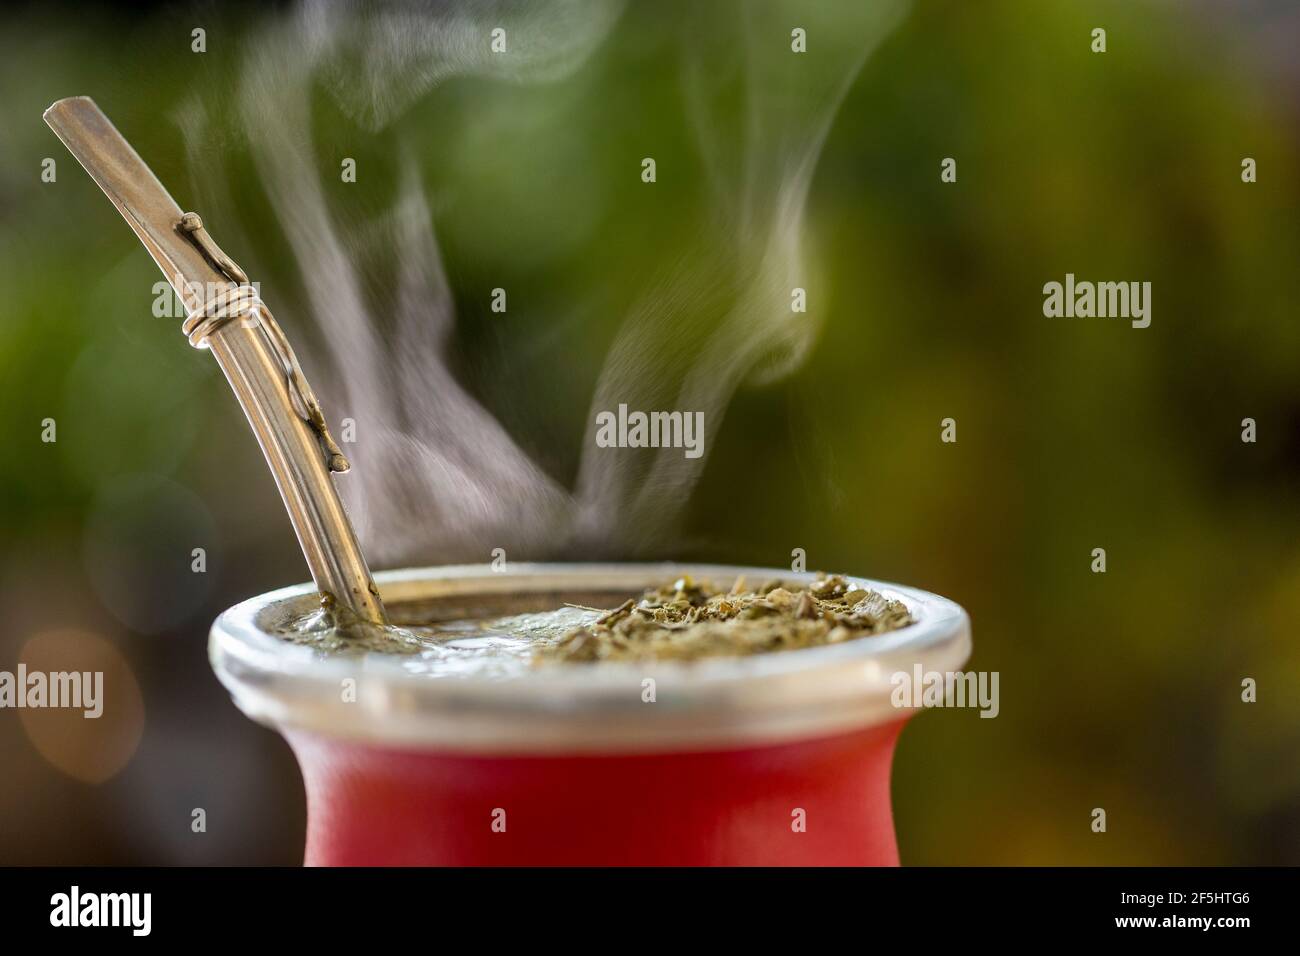 Gros plan horizontal de la chaude traditionnelle sud-américaine, Caffeine-Rich Infused Drink Mate (Yerba Mate) dans le Gourd de céramique rouge. Perfusion du compagnon de cuisson à la vapeur Banque D'Images